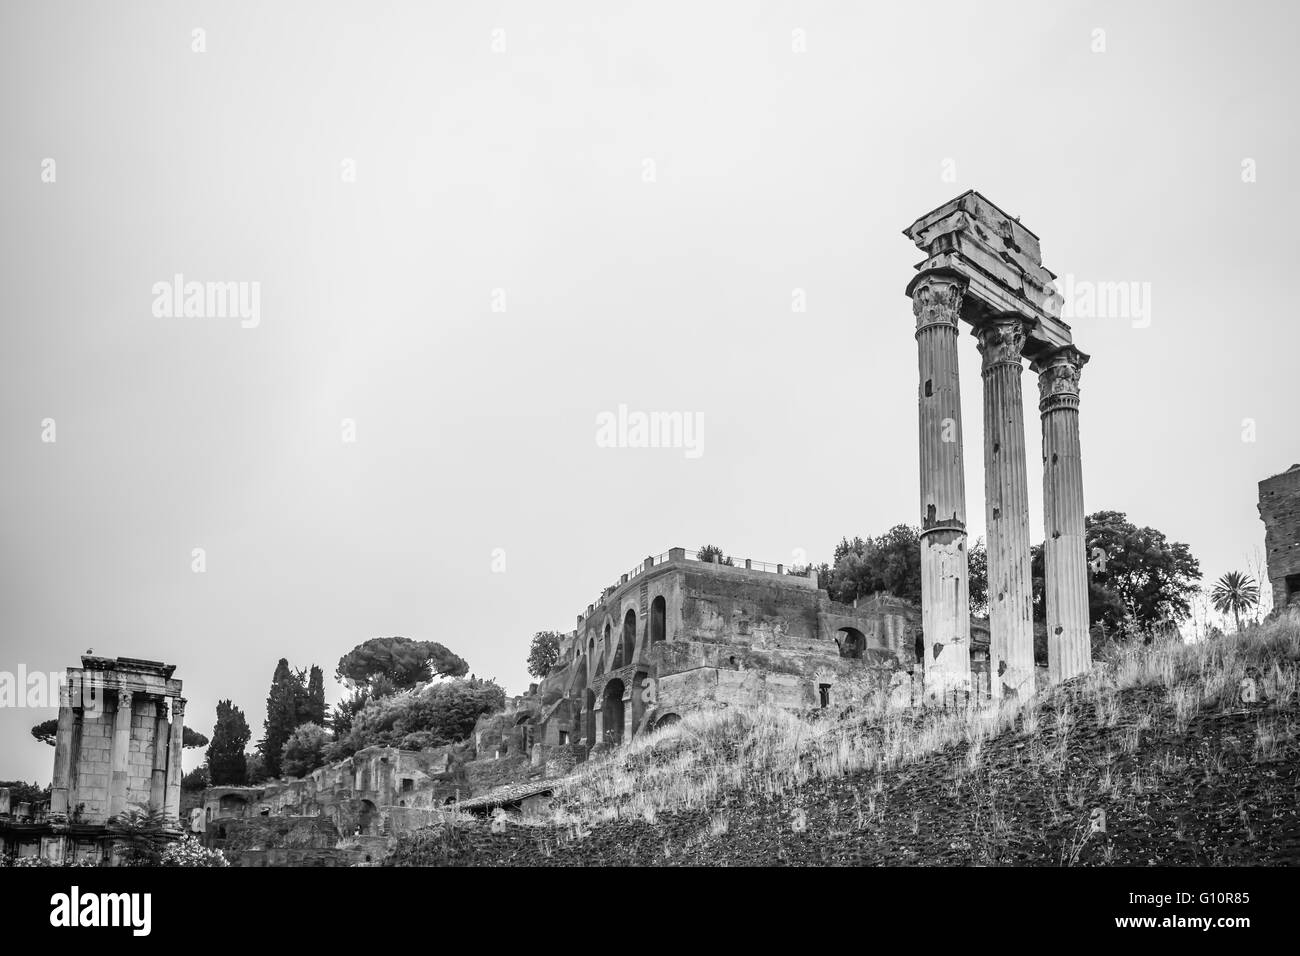 Vista de las ruinas antiguas en blanco y negro, Roma, Italia Foto de stock